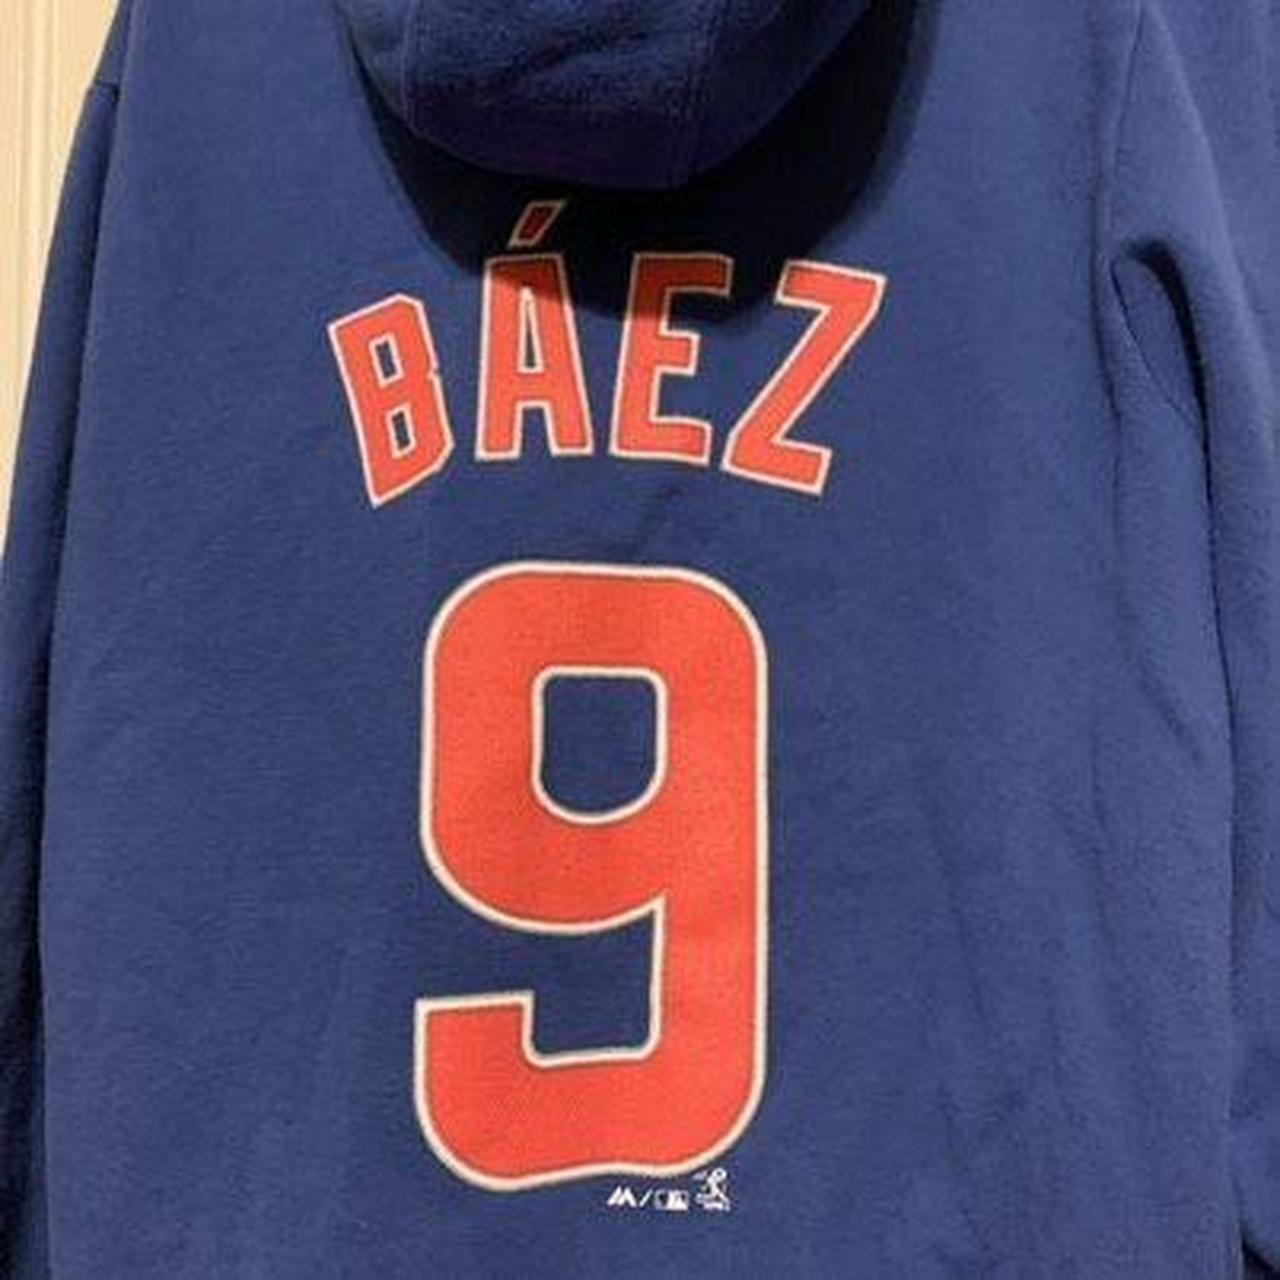 Chicago cubs jersey tee Baez number 9 In good - Depop